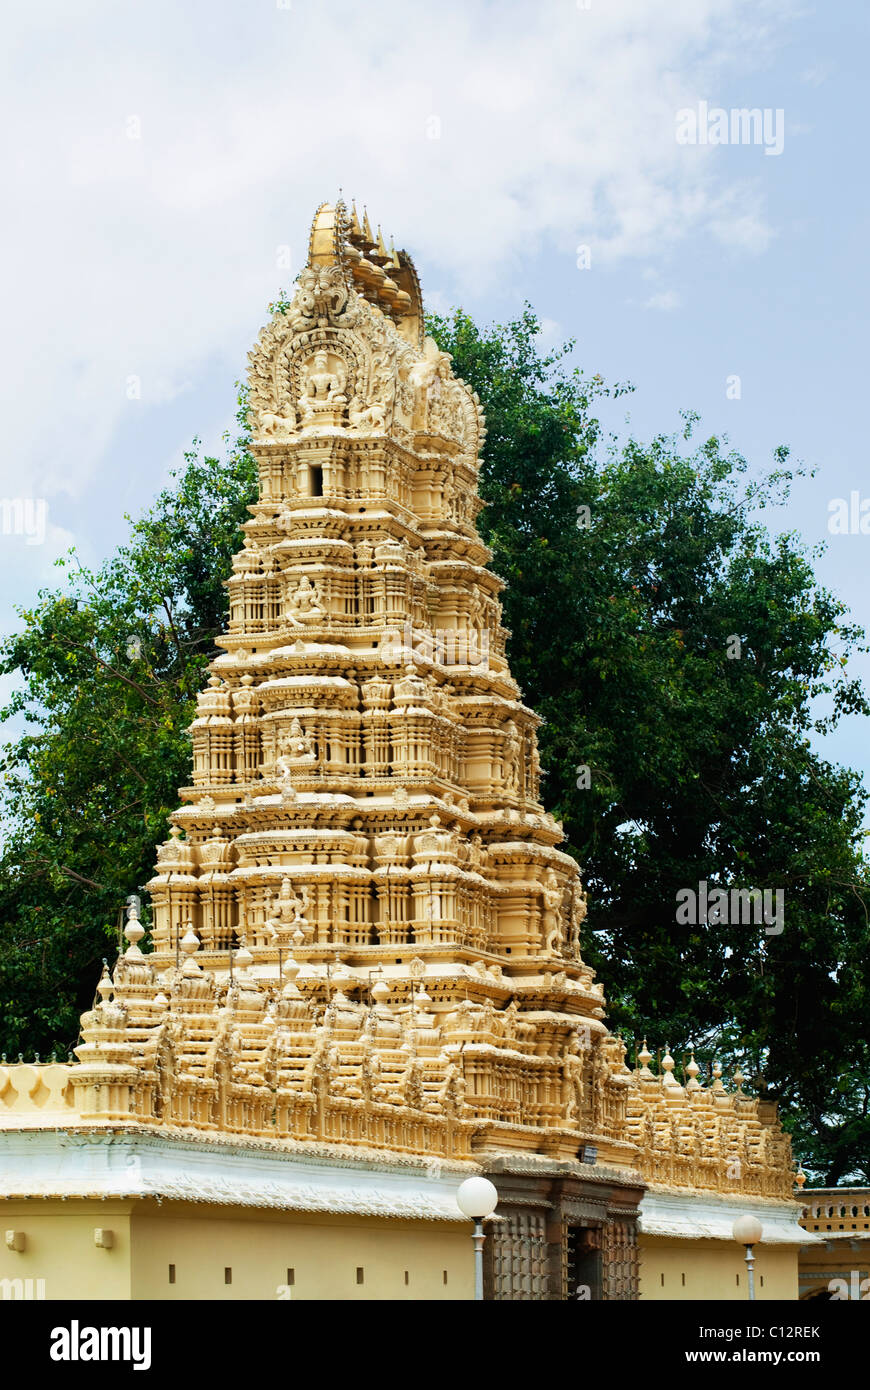 Low angle view of a temple, Swetha Varahaswamy Temple, Mysore Palace, Mysore, Karnataka, India Stock Photo